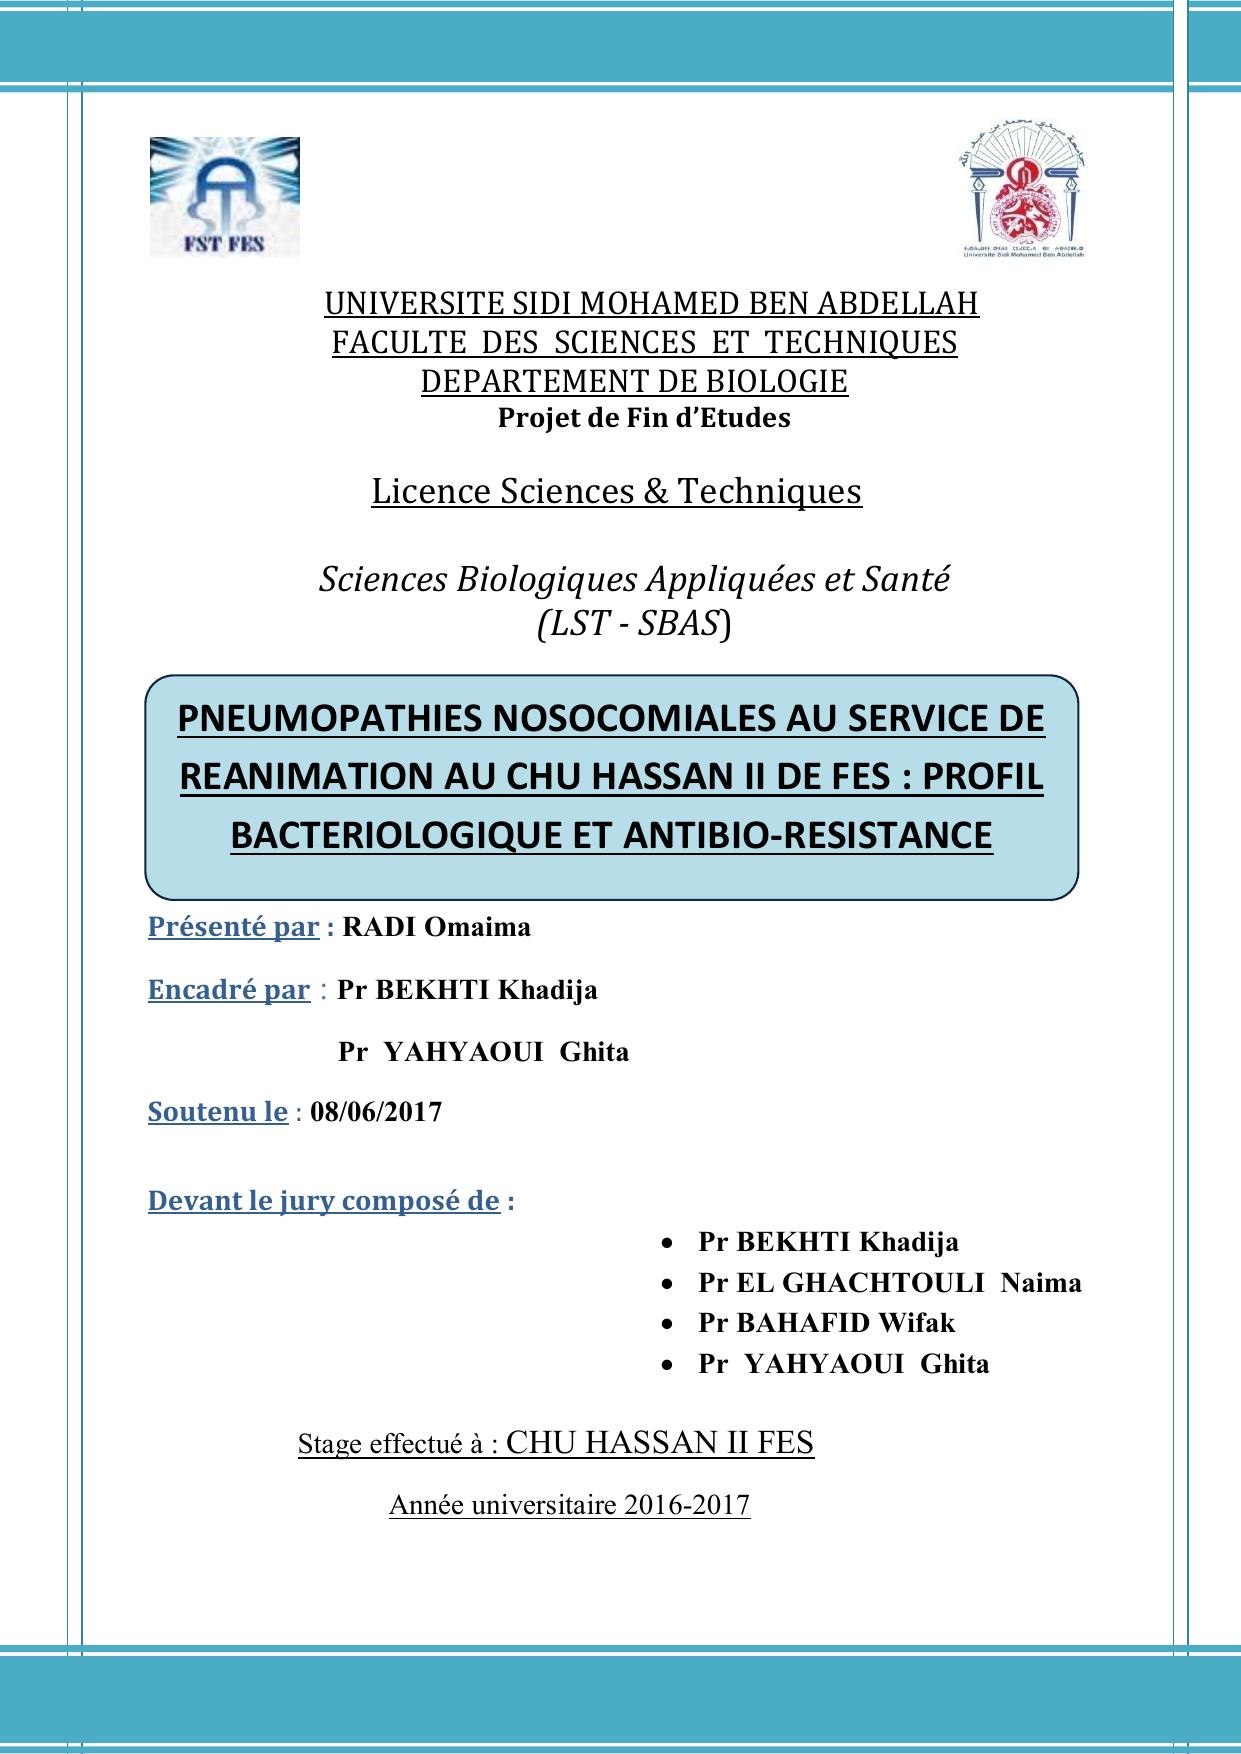 Pneumopathies nosocomiales au service de reanimation au CHU HASSAN II de Fès: Profil bactériologique et antibio-résistance